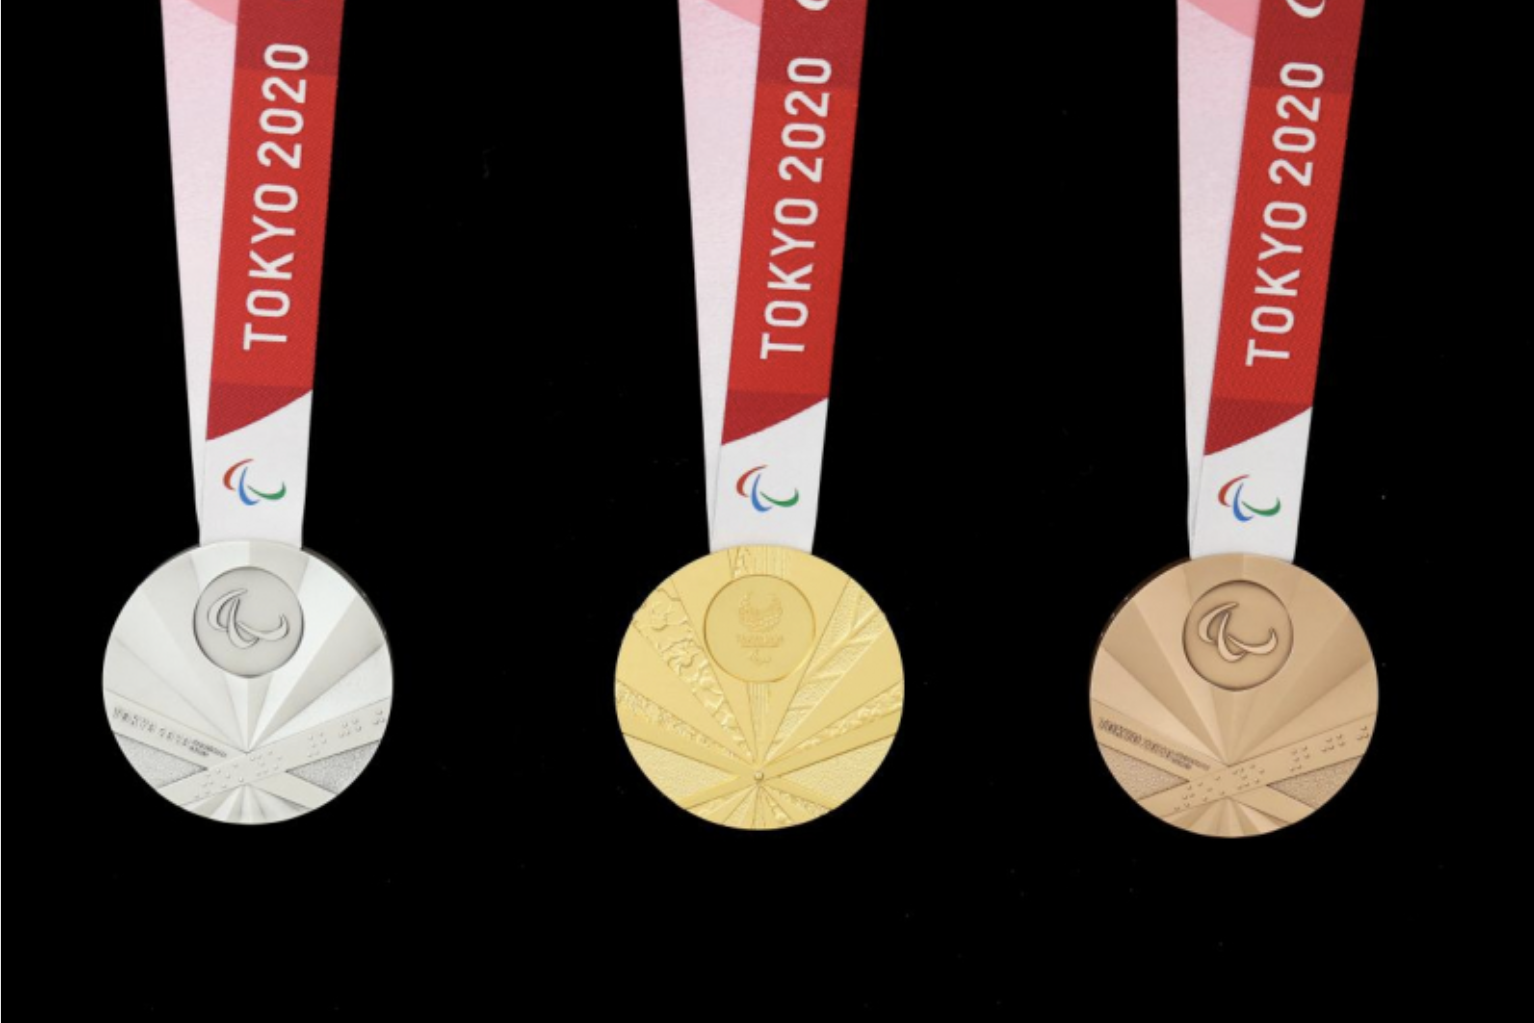 Detalles de las medallas de los Juegos Paralmpicos de Tokio 2020.